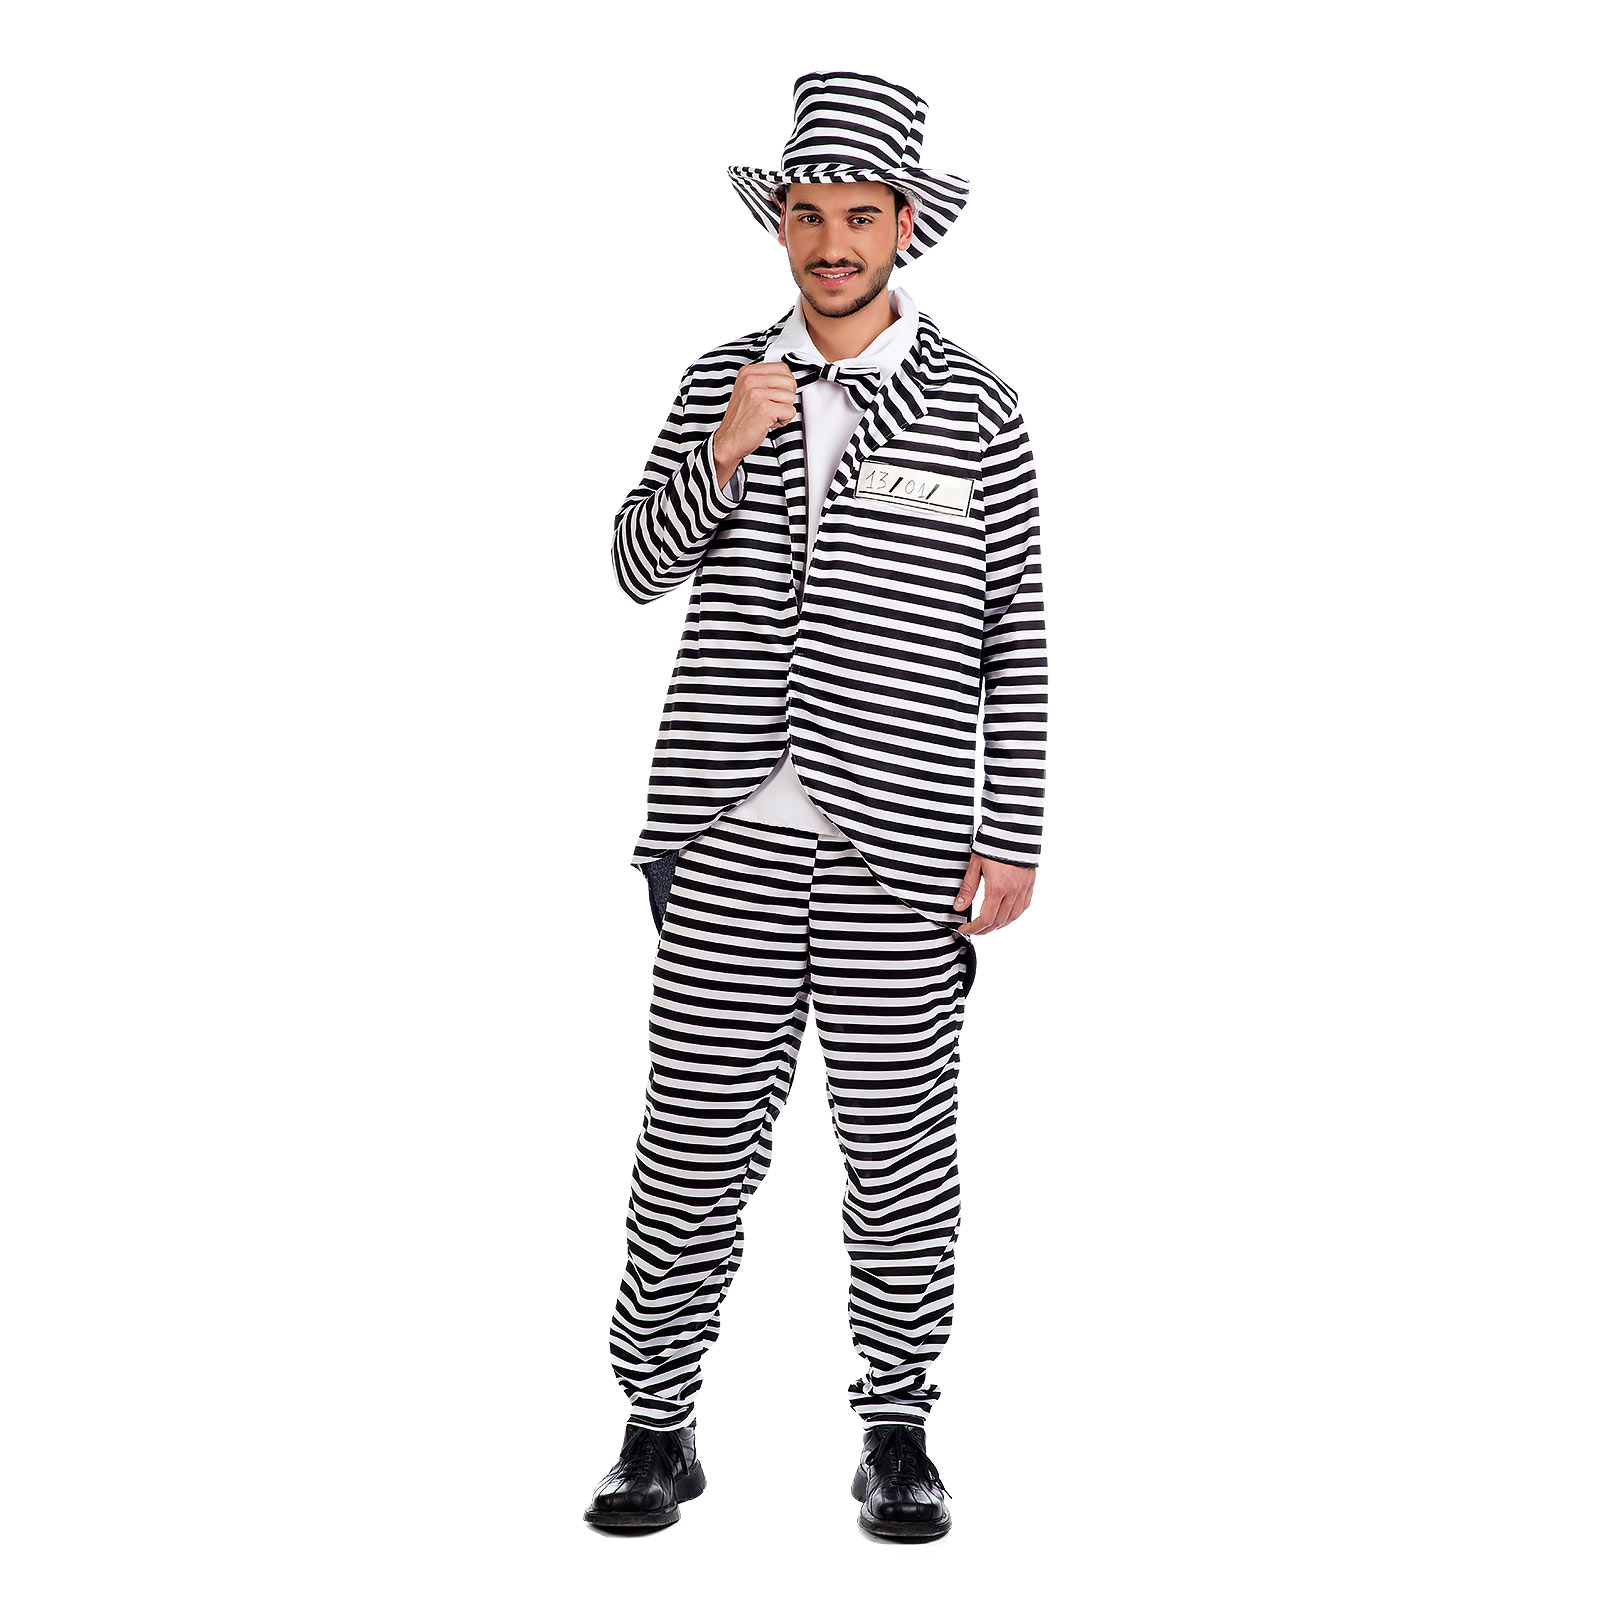 Mr. Convict - Men's Costume